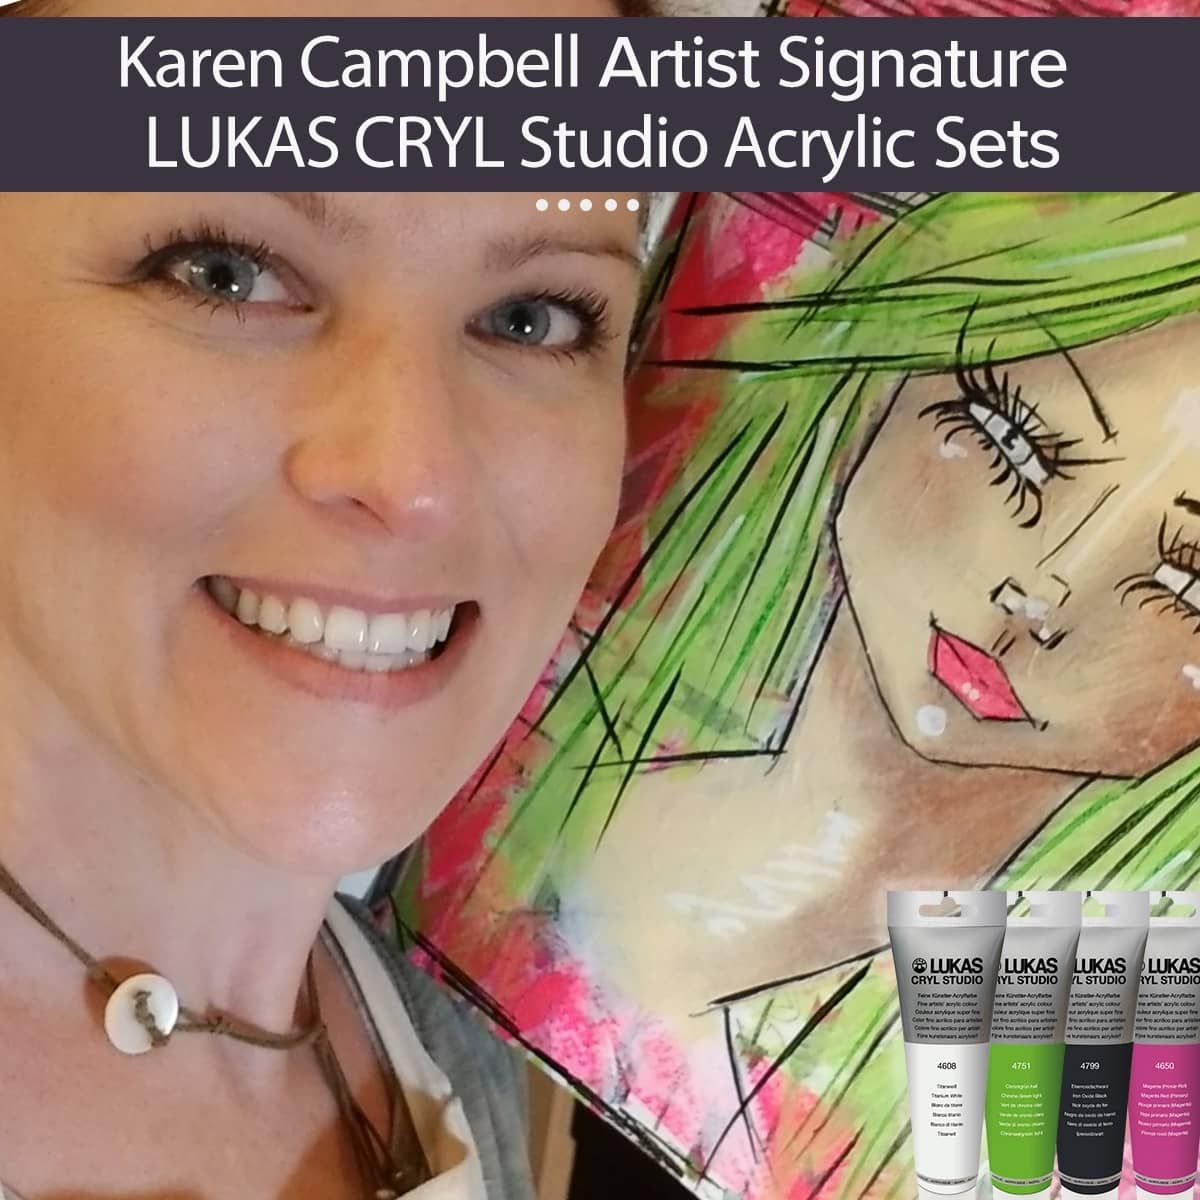 Karen Campbell's weekly Blog. - KAREN CAMPBELL, ARTIST